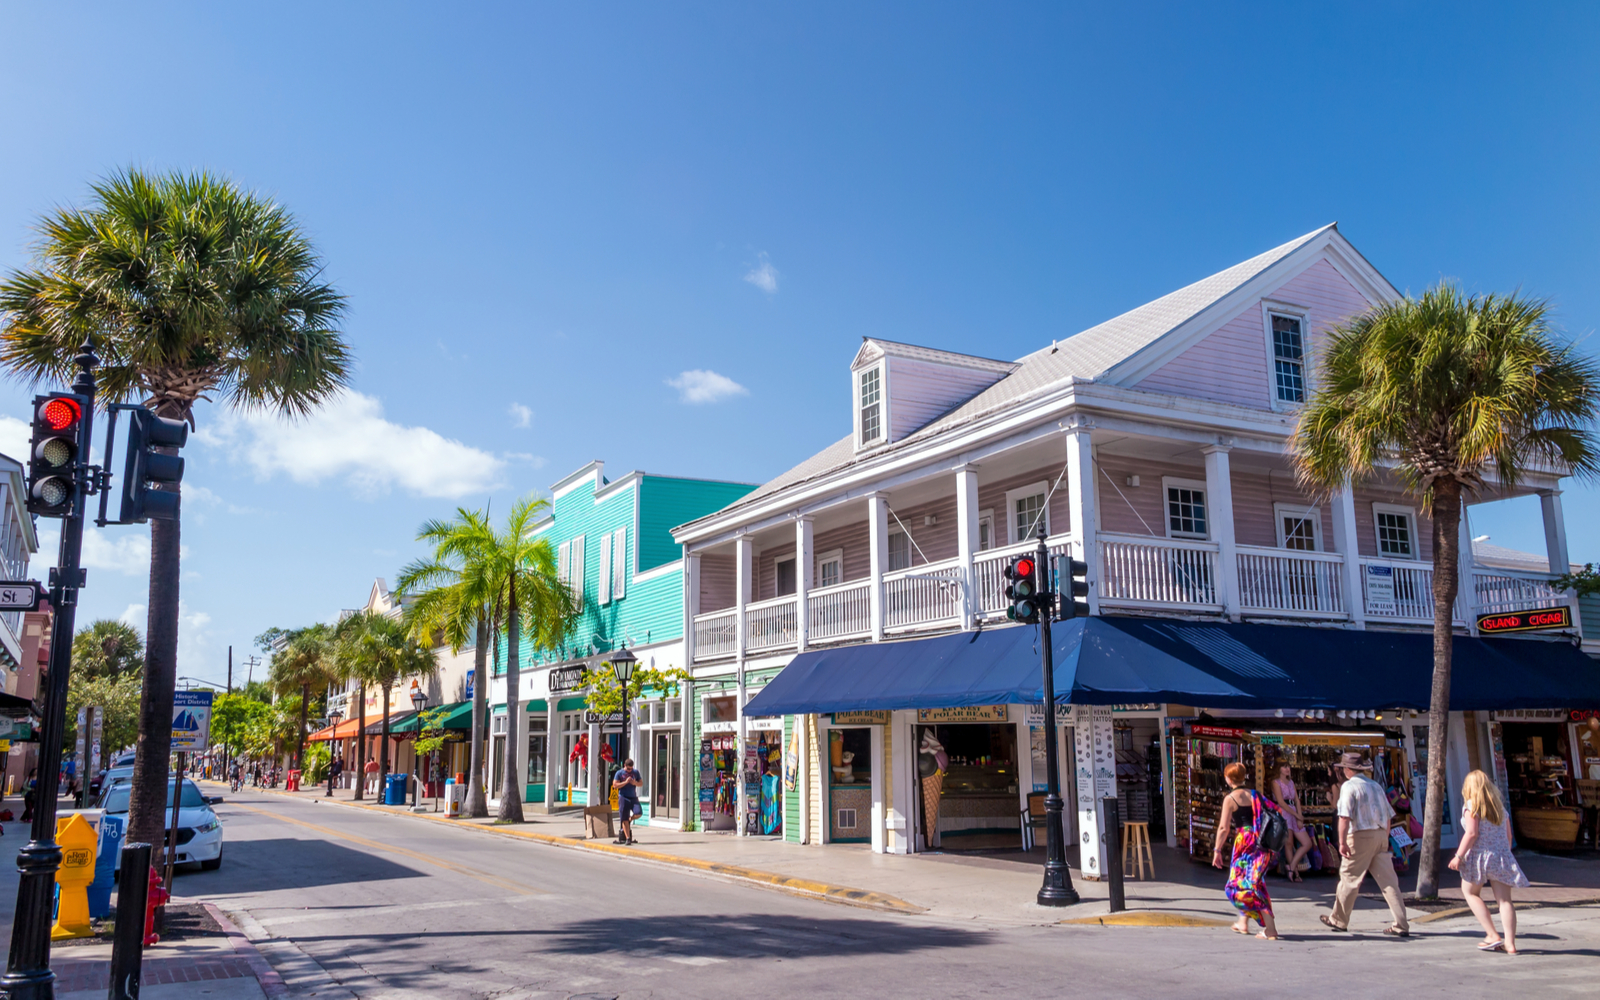 15 Best Hotels in Key West in 2022